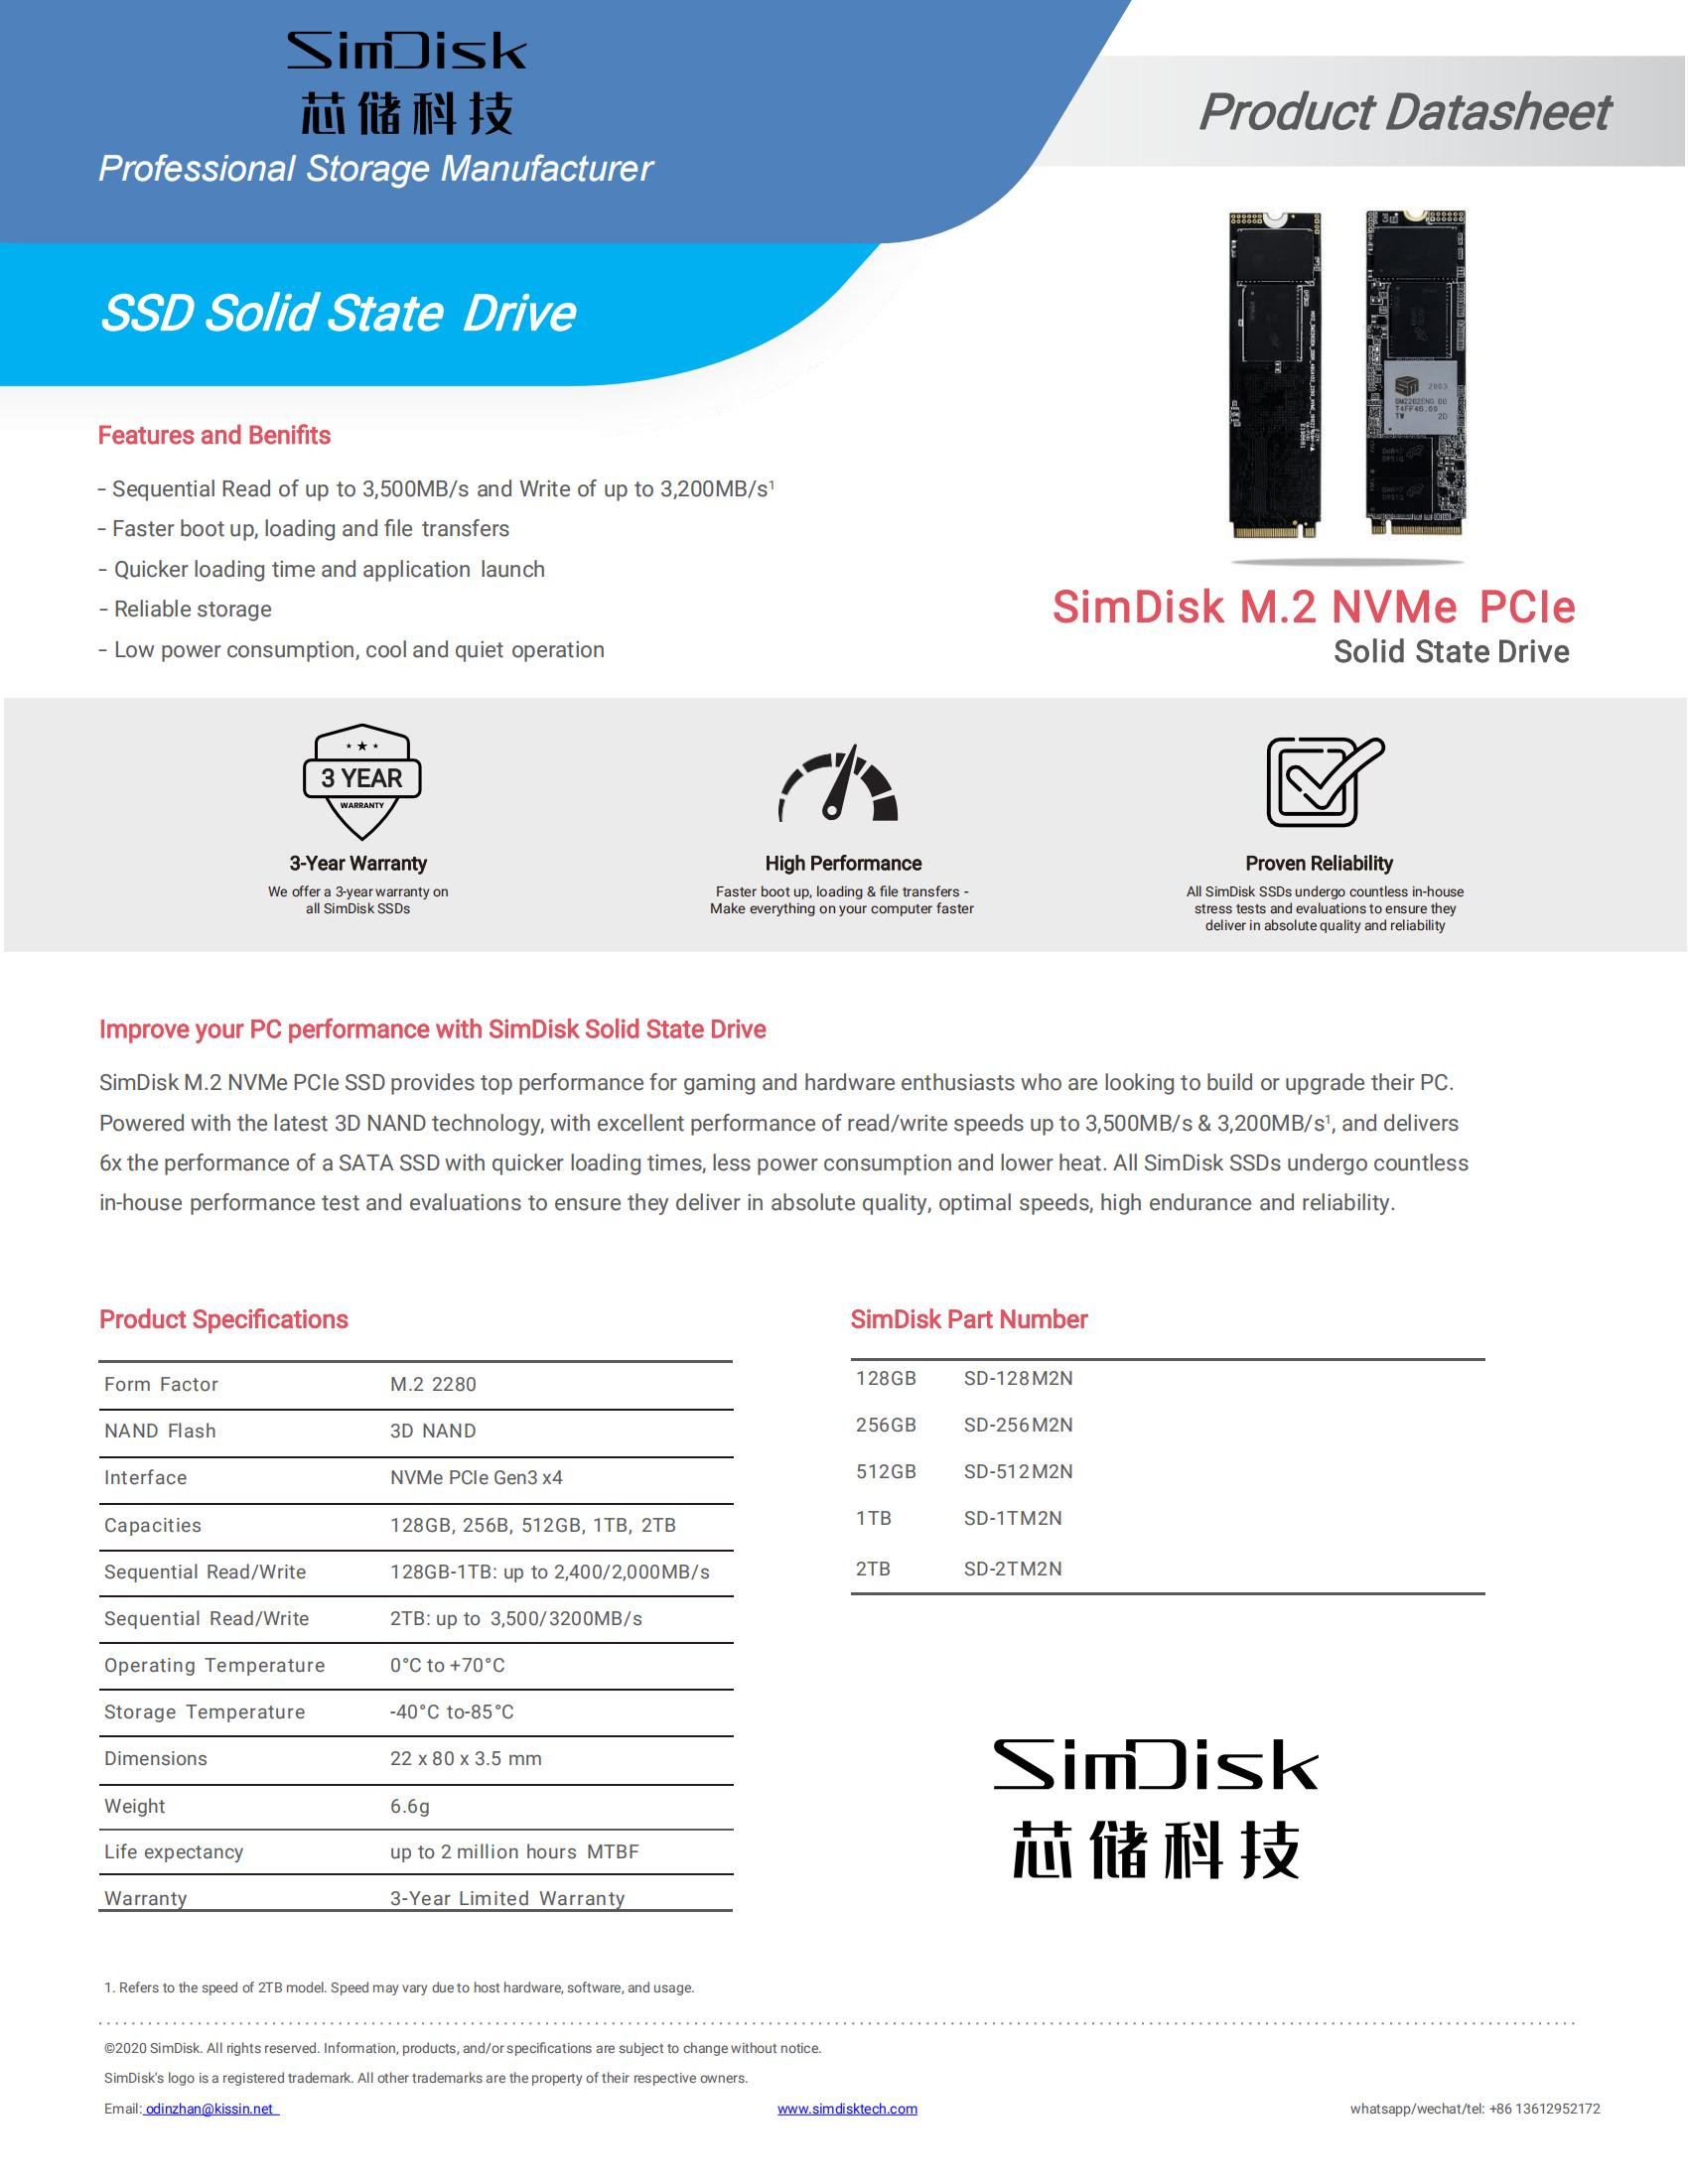 Ficha de Dados SimDisk M.2 NVME SSD_00